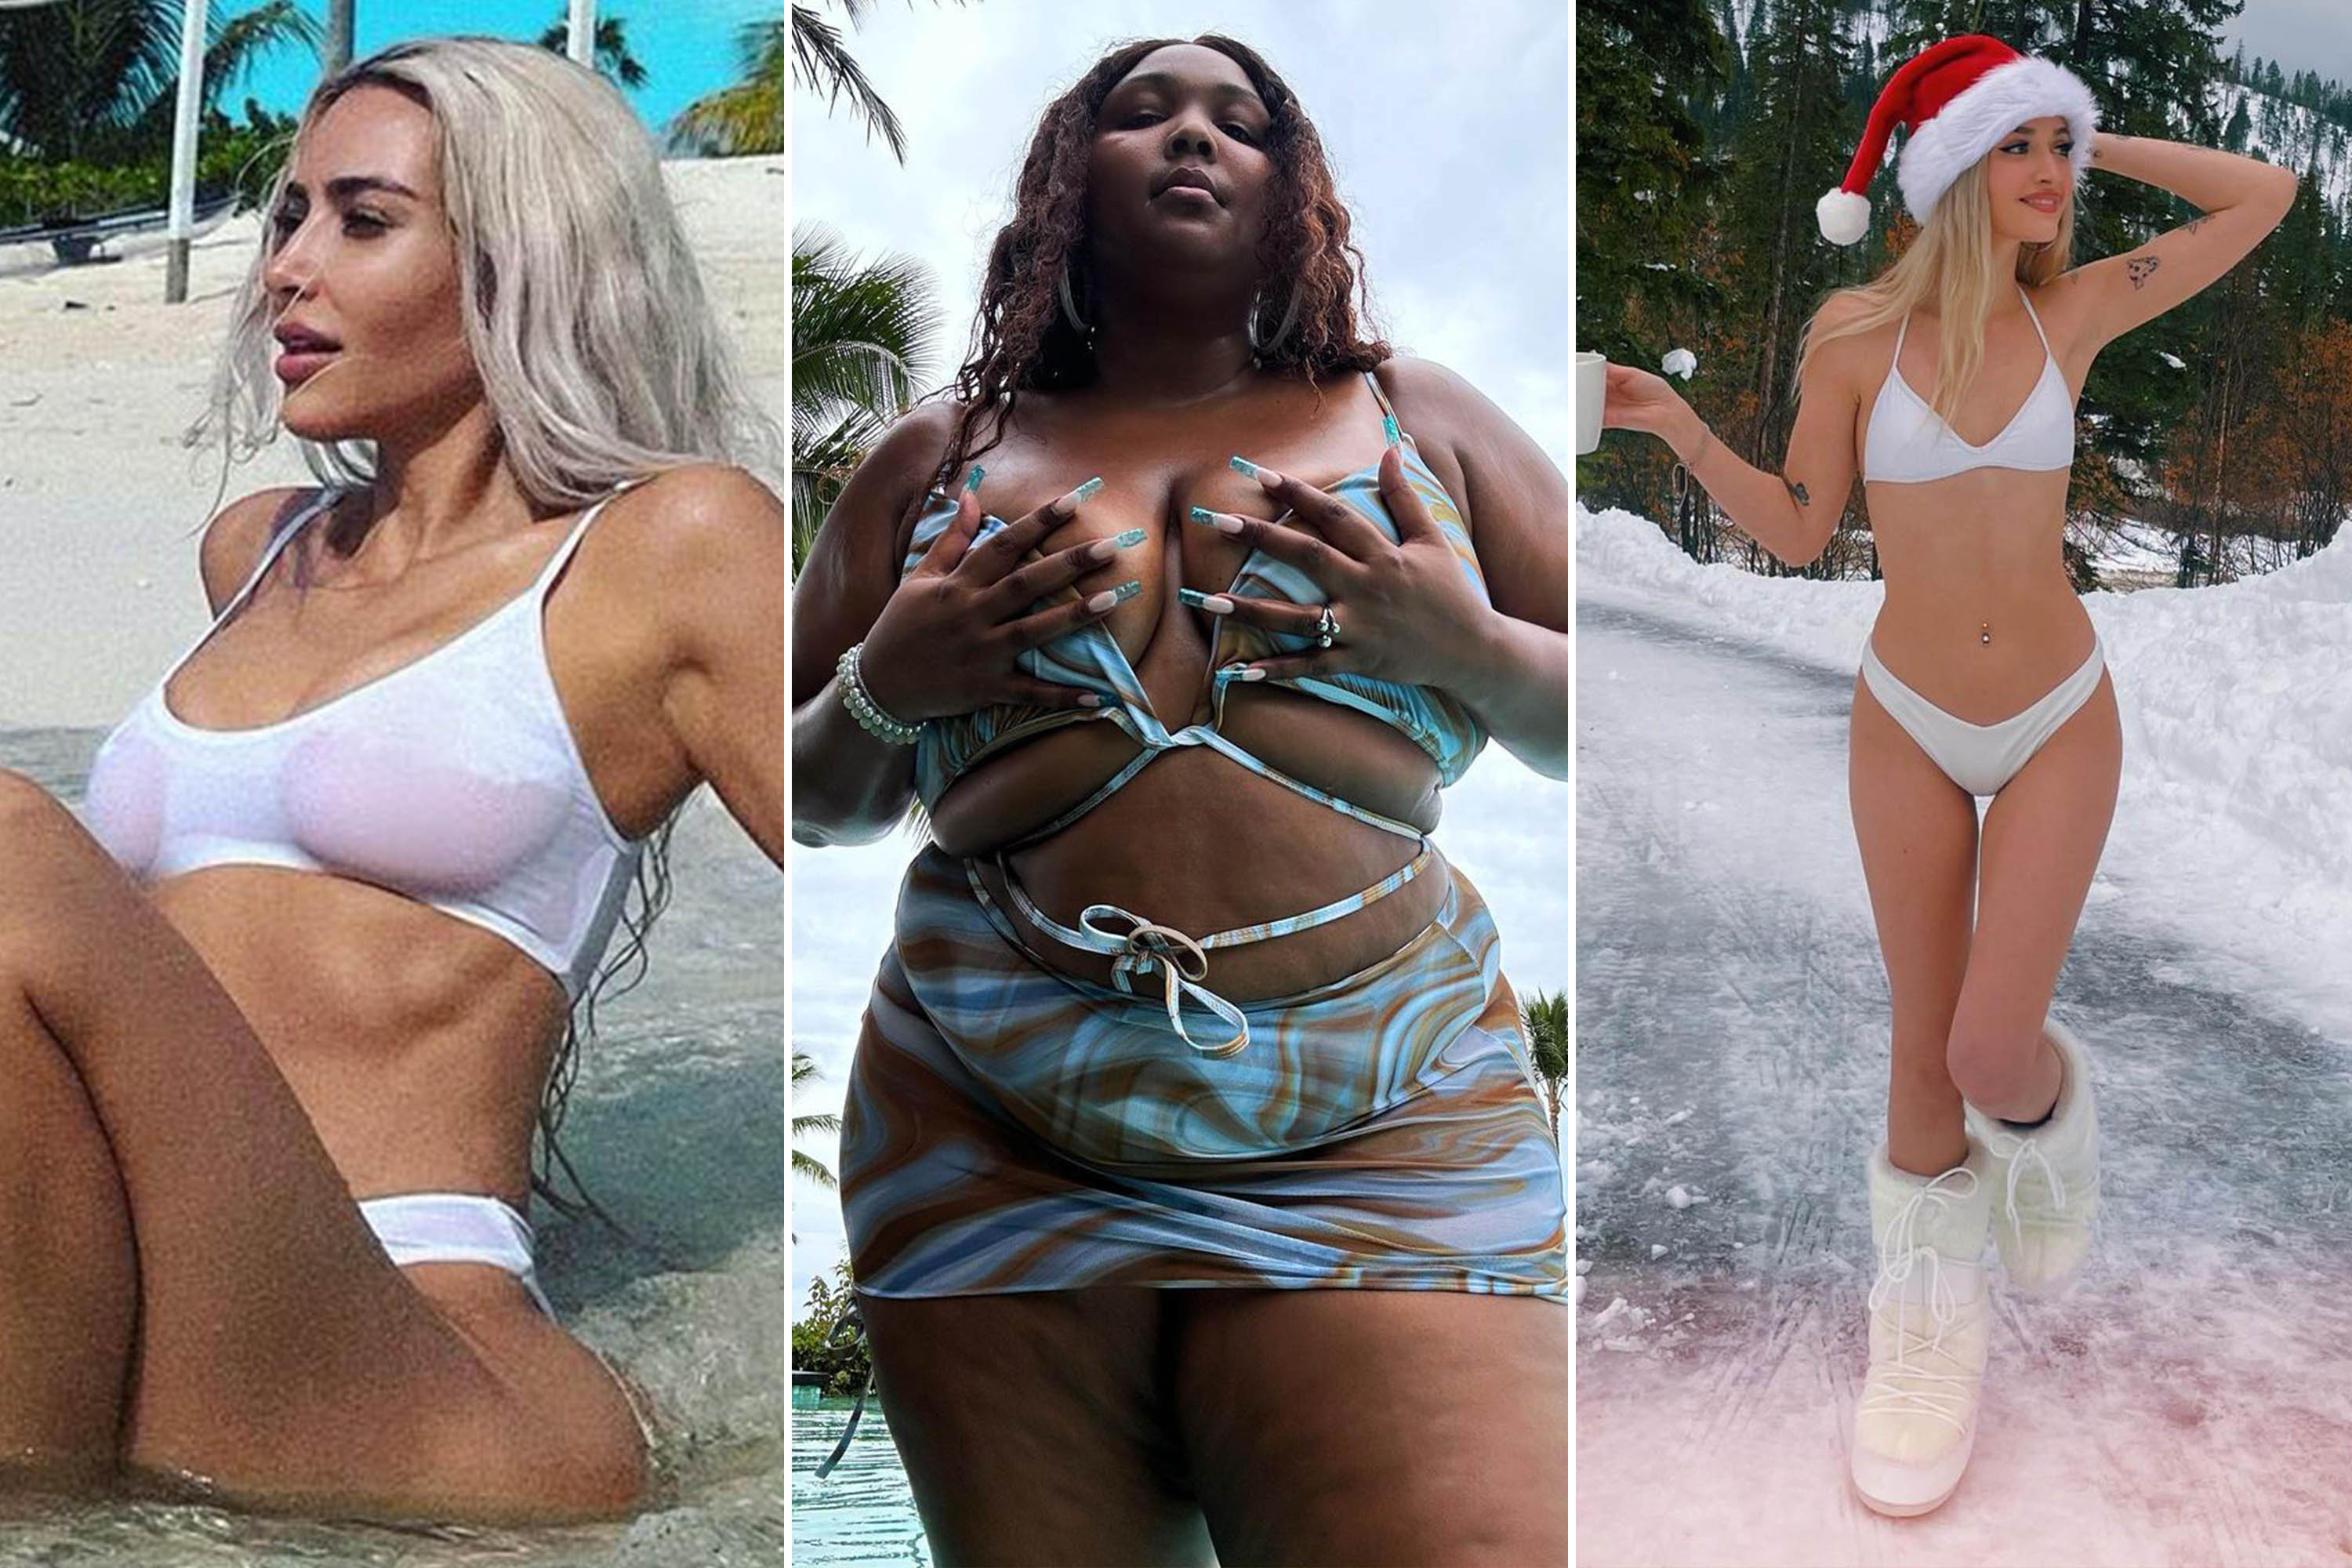 bobbi hancock share bikini babe strip photos